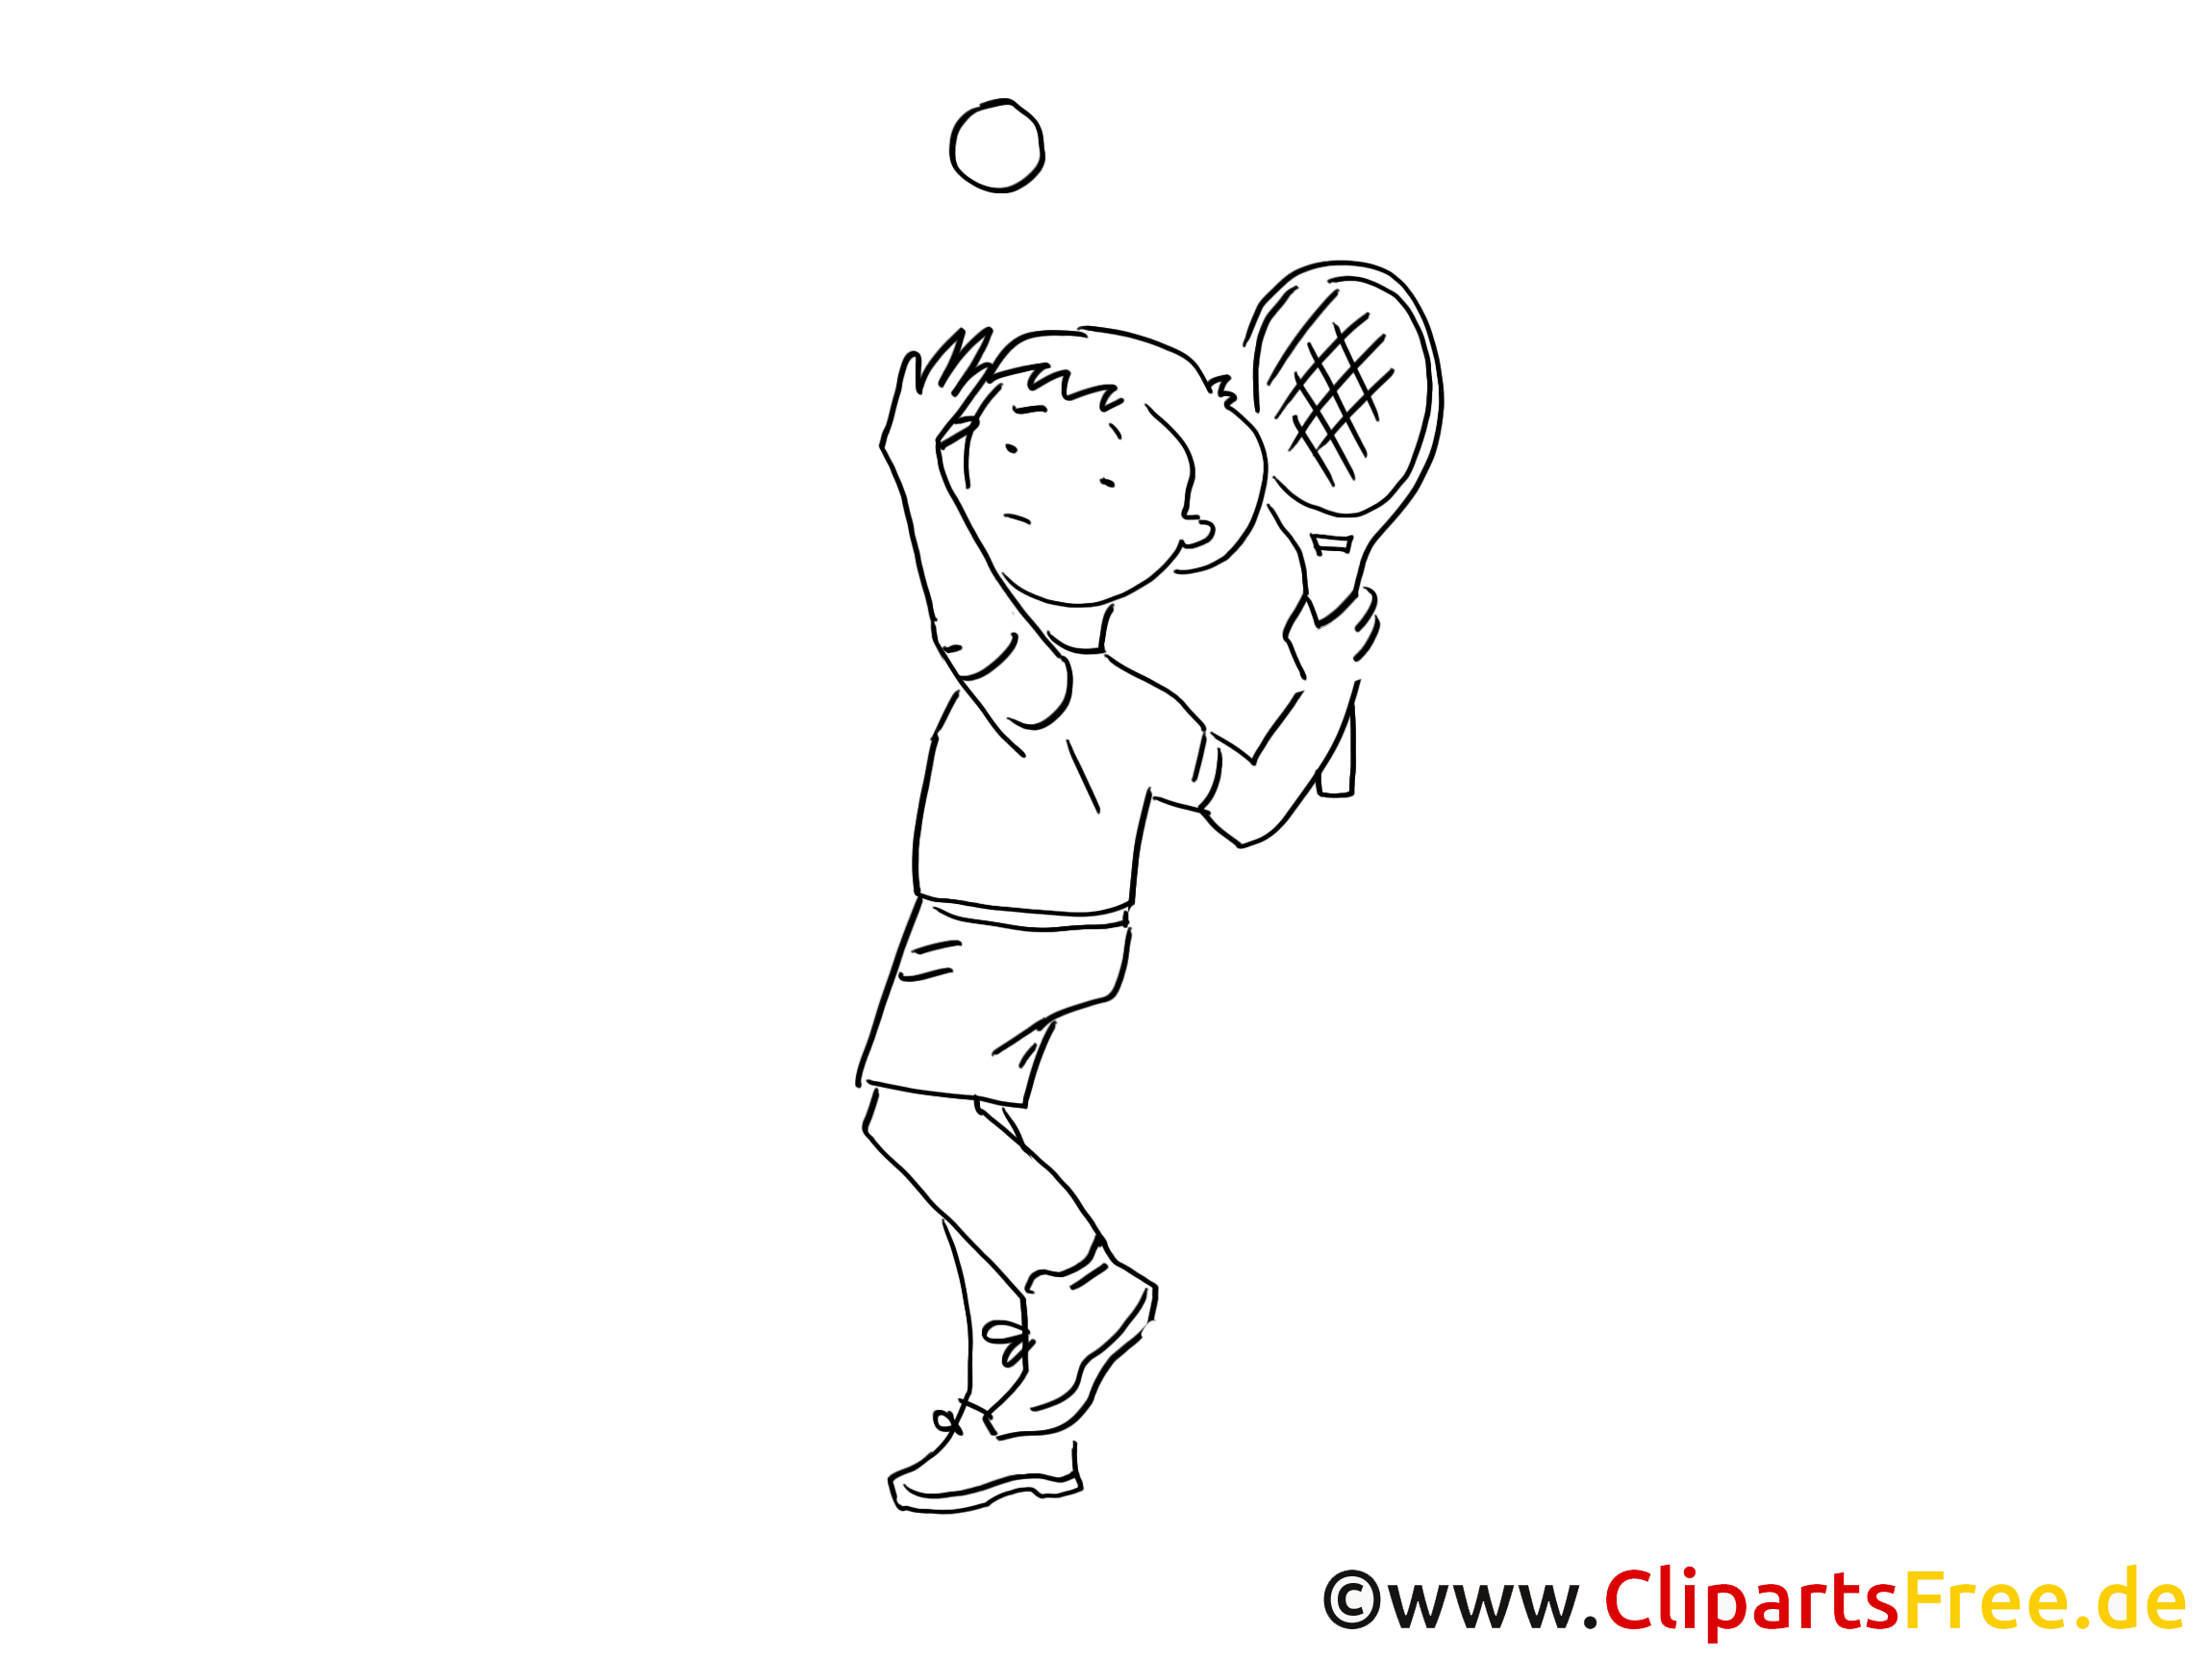 clipart gratuit sport tennis - photo #47